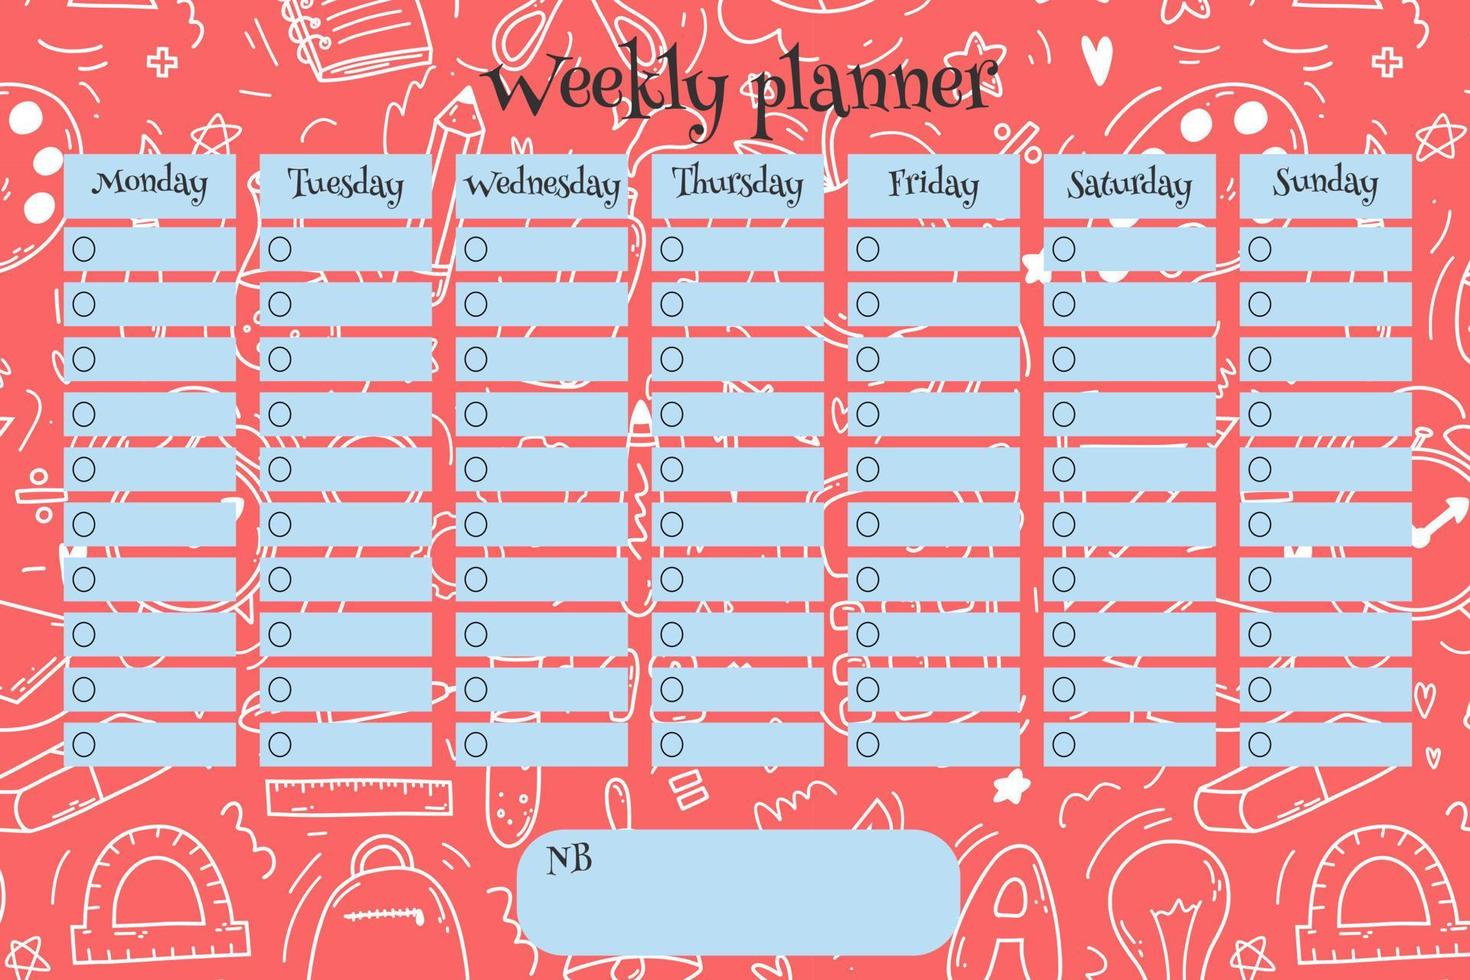 wöchentlich Planer zum Kinder auf Gekritzel Rosa Hintergrund mit Schule liefert Artikel. bunt Vektor Illustration zum stationär, Zeitplan, Liste, Schule Zeitplan, außerhalb des Lehrplans Aktivitäten.